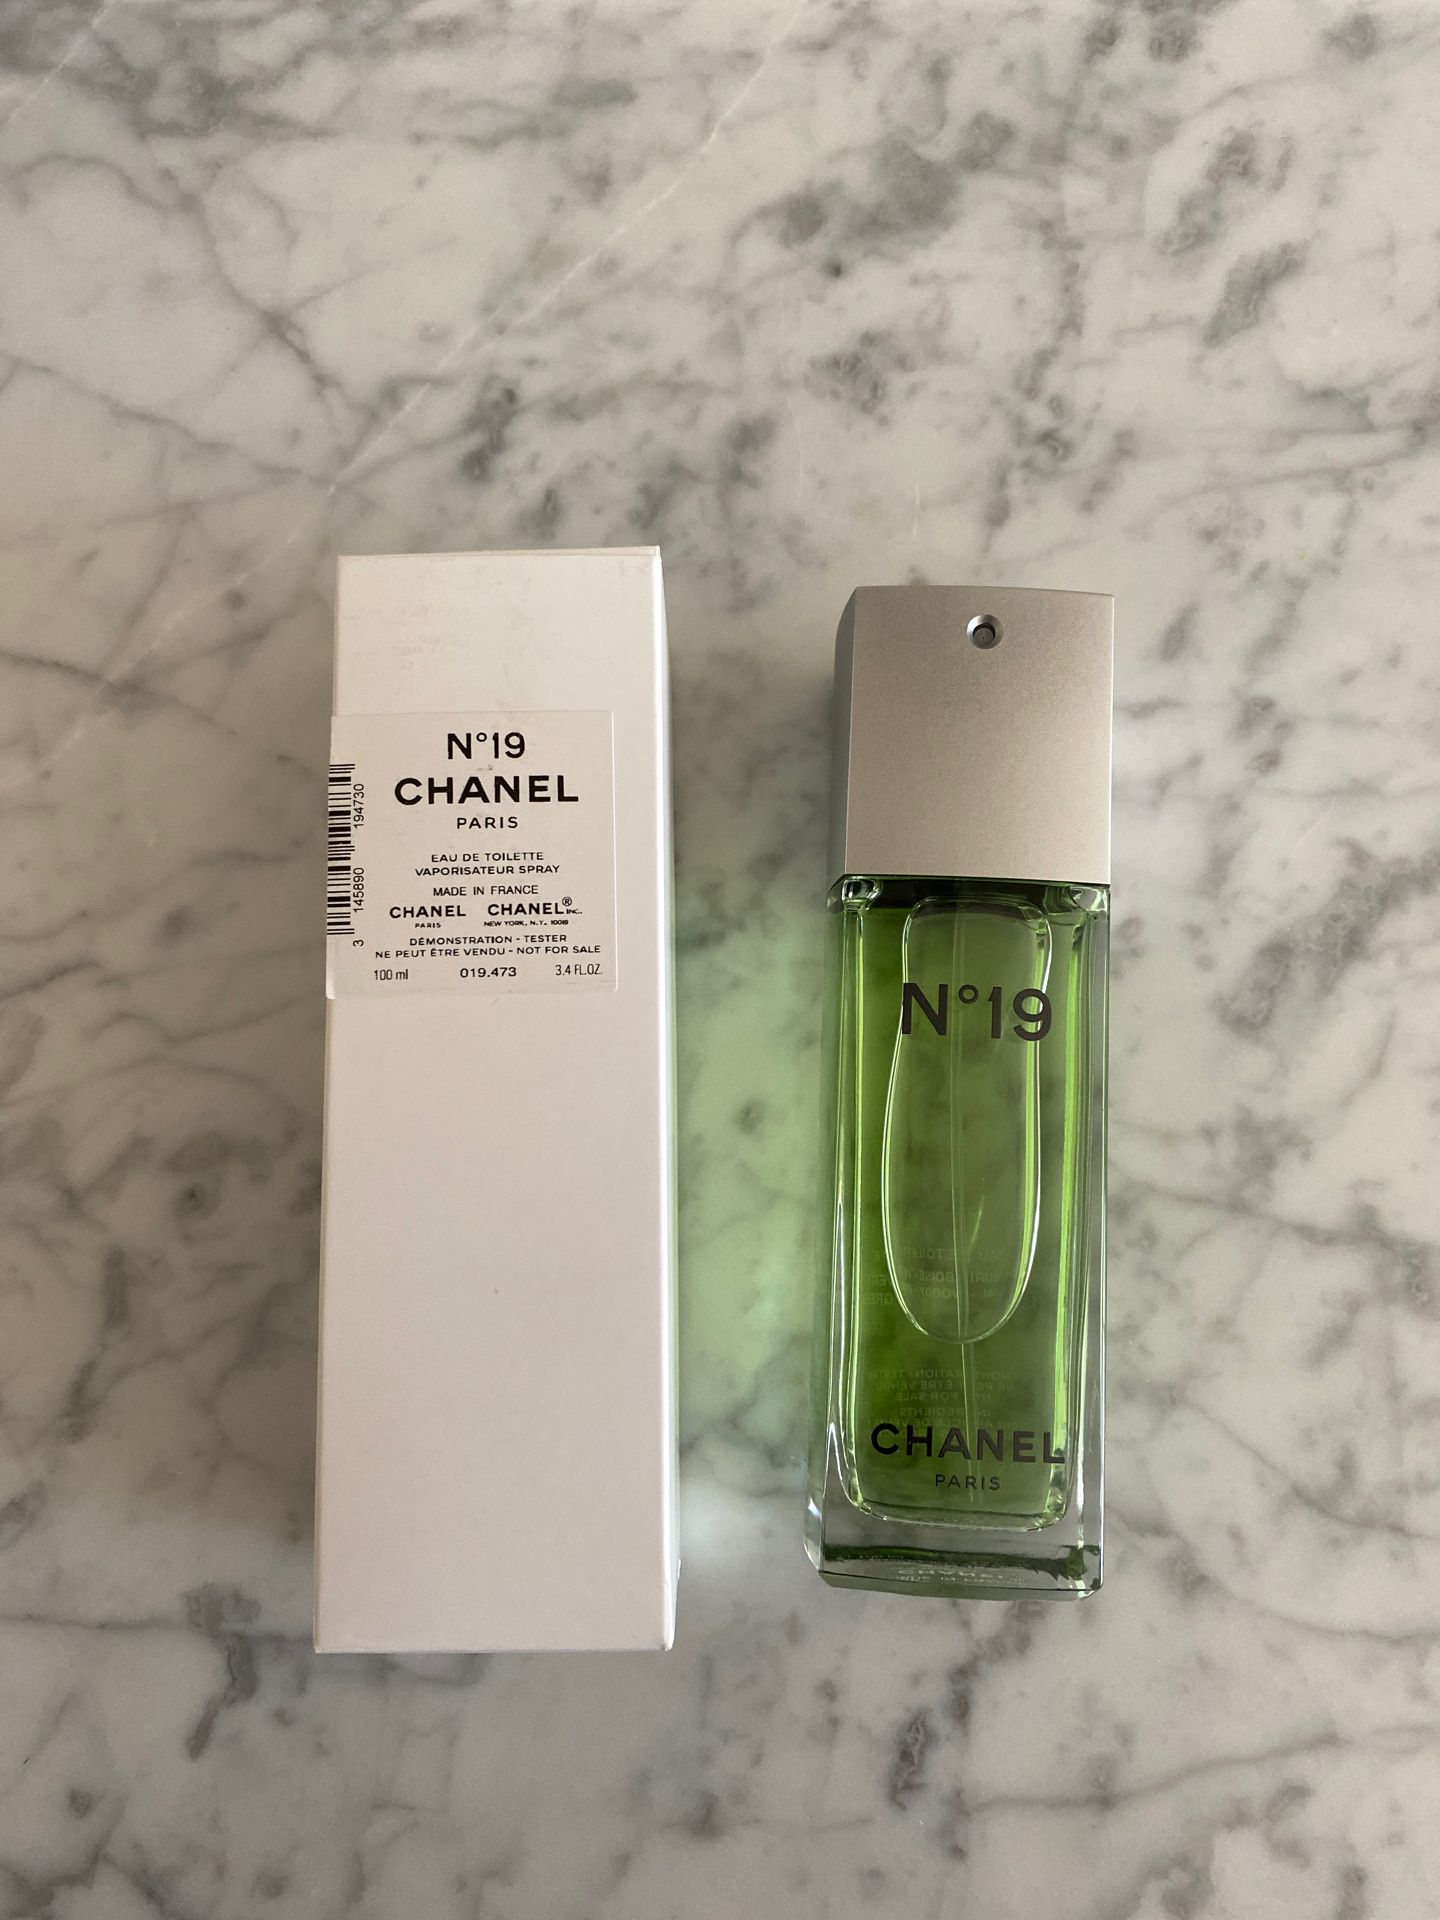 Chanel N19 EDT Perfume Spray 3.4 fl oz - New